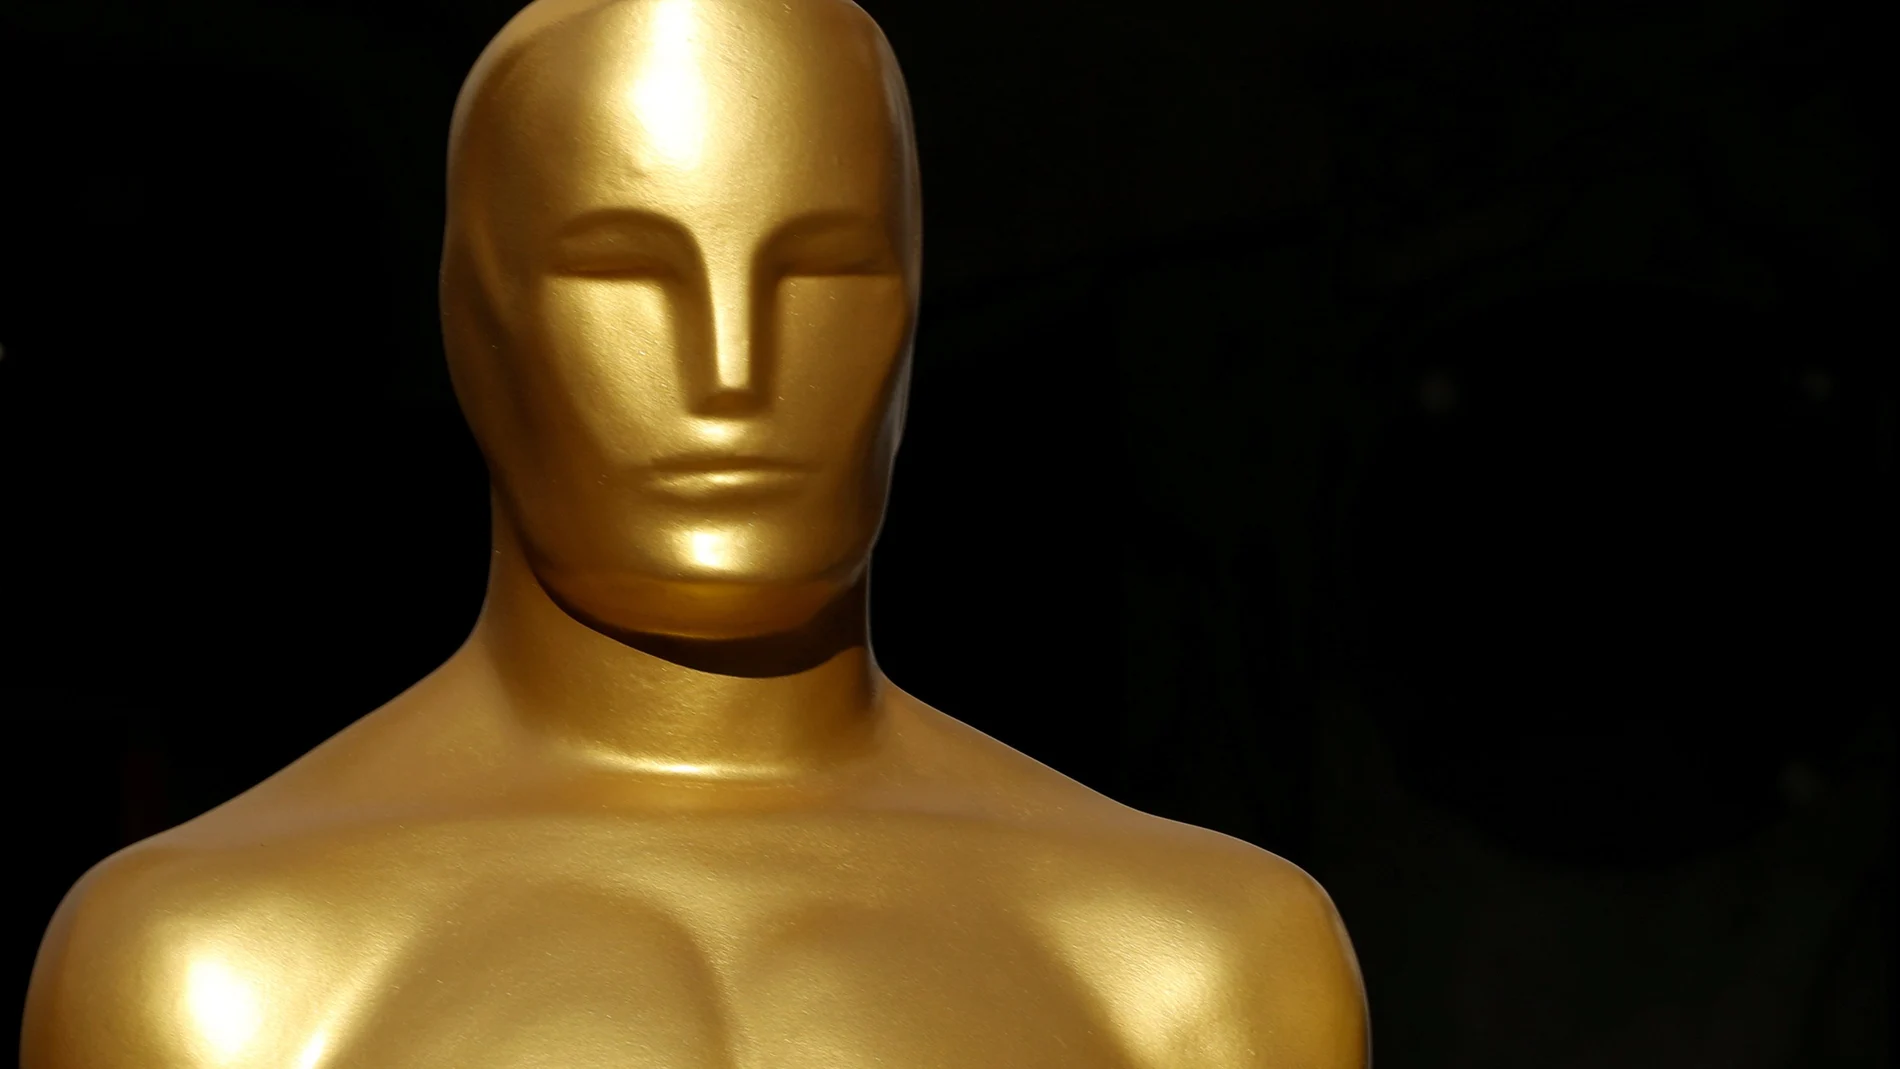 El 25 de abril, los nominados de las 24 categorías competirán por hacerse con la estatuilla más preciada del planeta cine: el Oscar